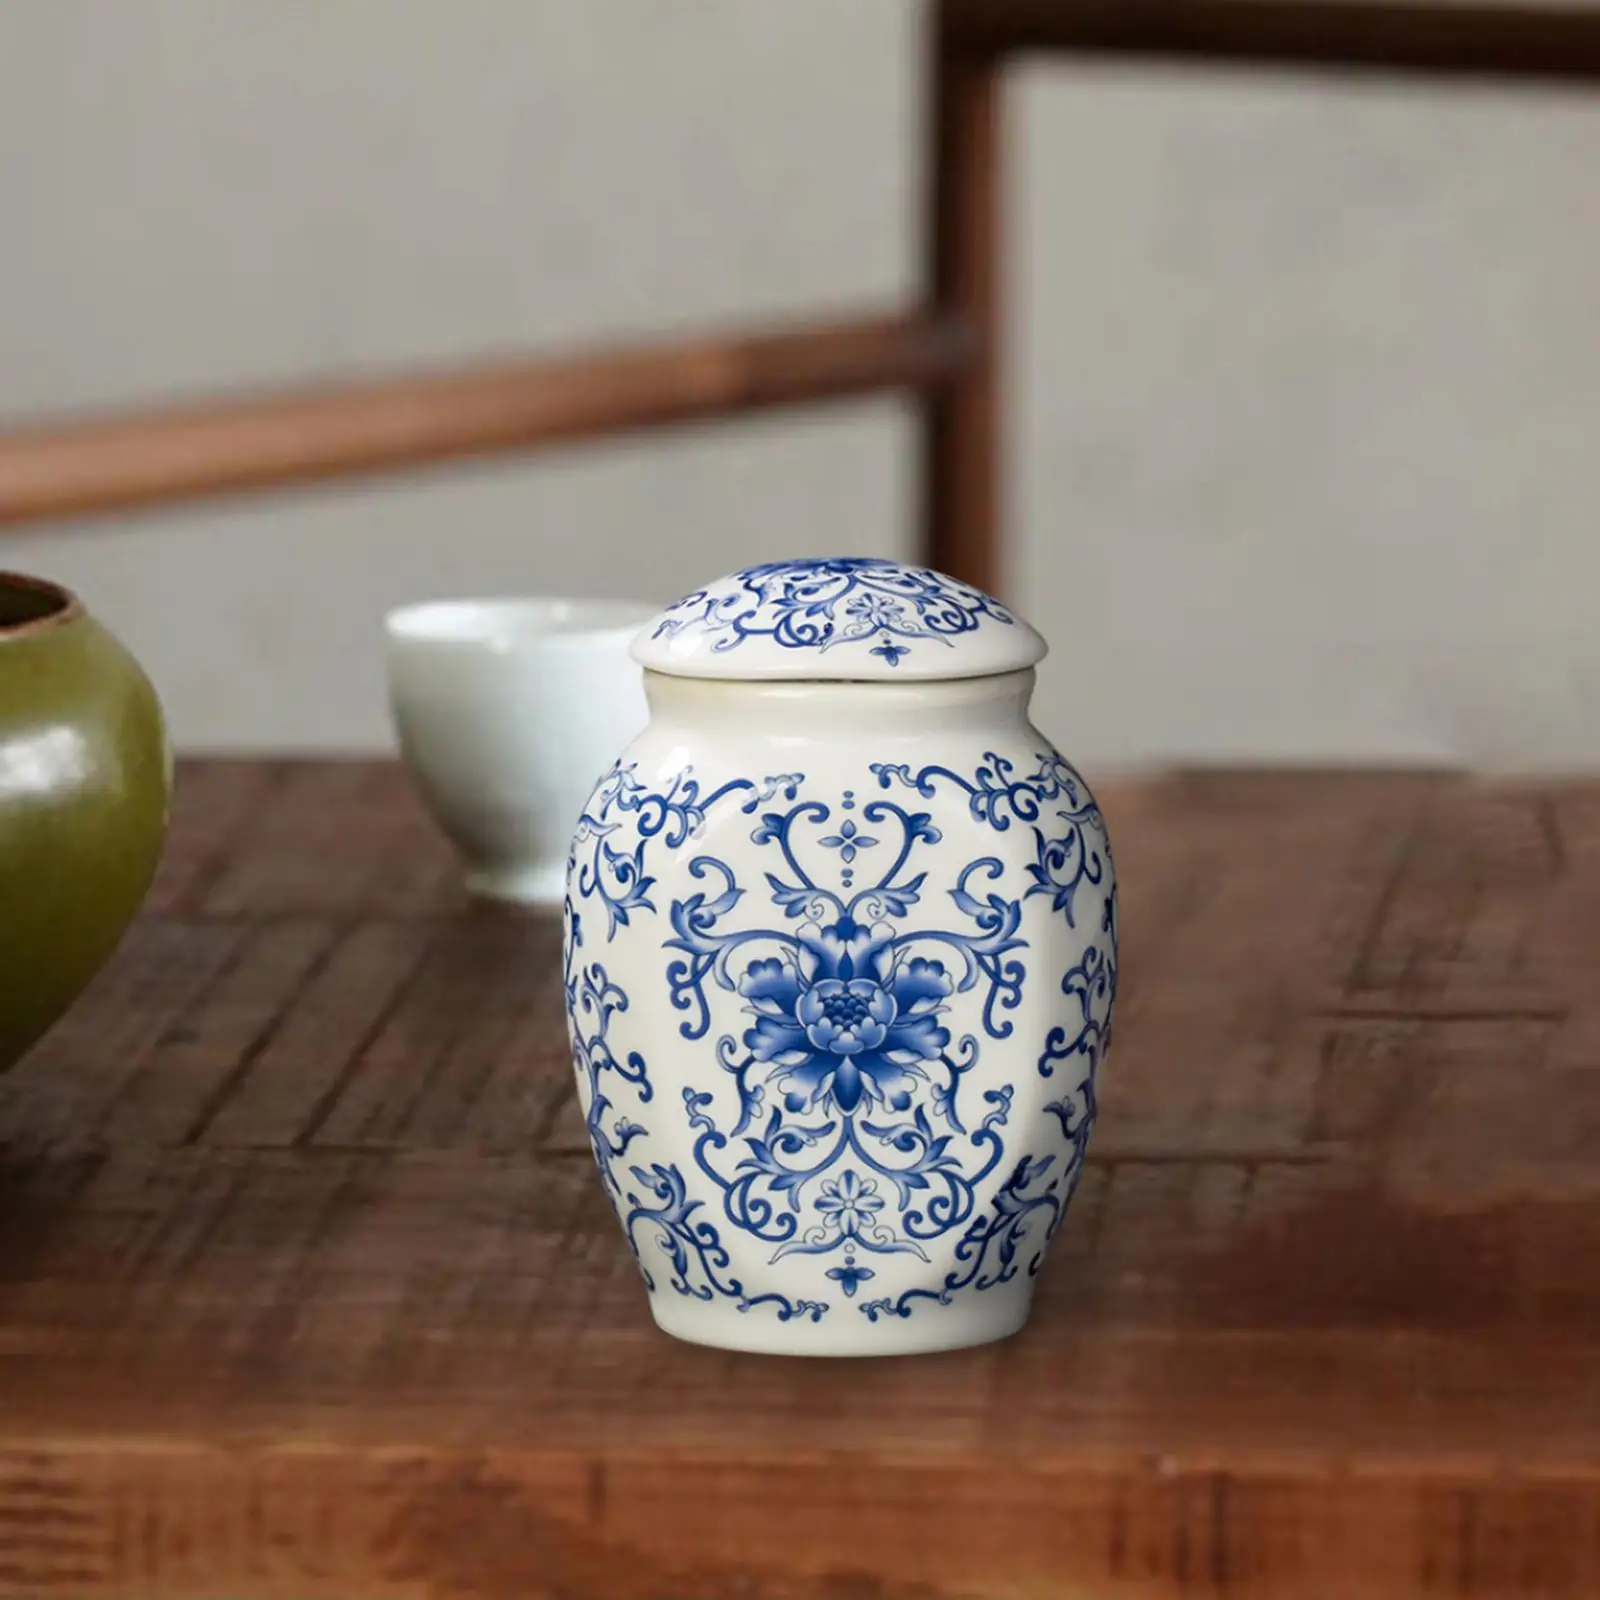 Porcelain Temple Ginger Jar Tea Storage Jar with Lid Decoration Ceramic Vase